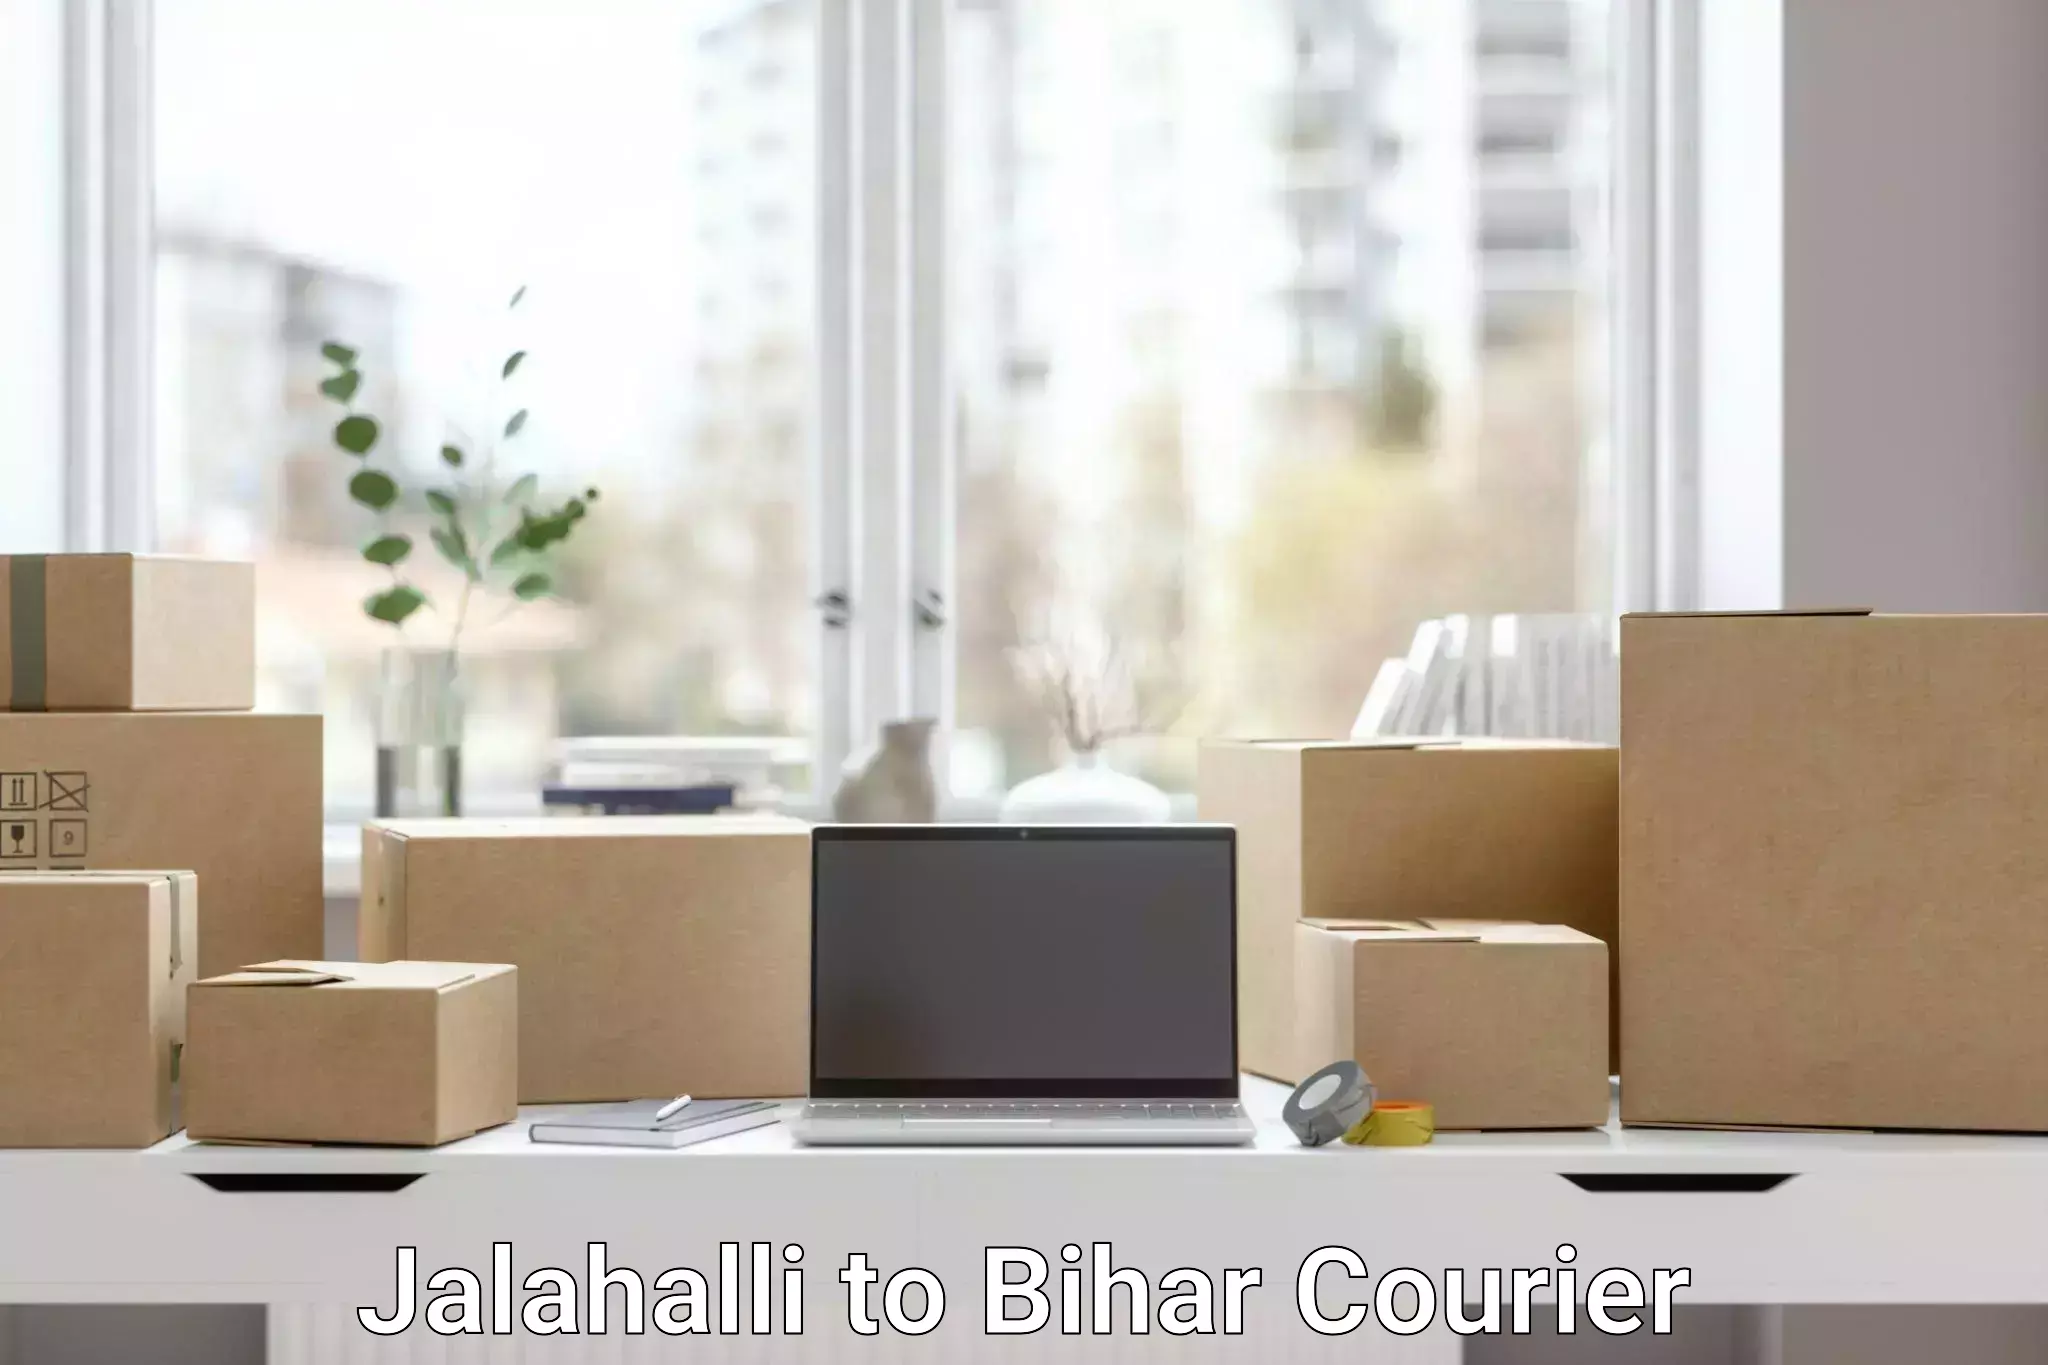 Comprehensive freight services Jalahalli to Bihar